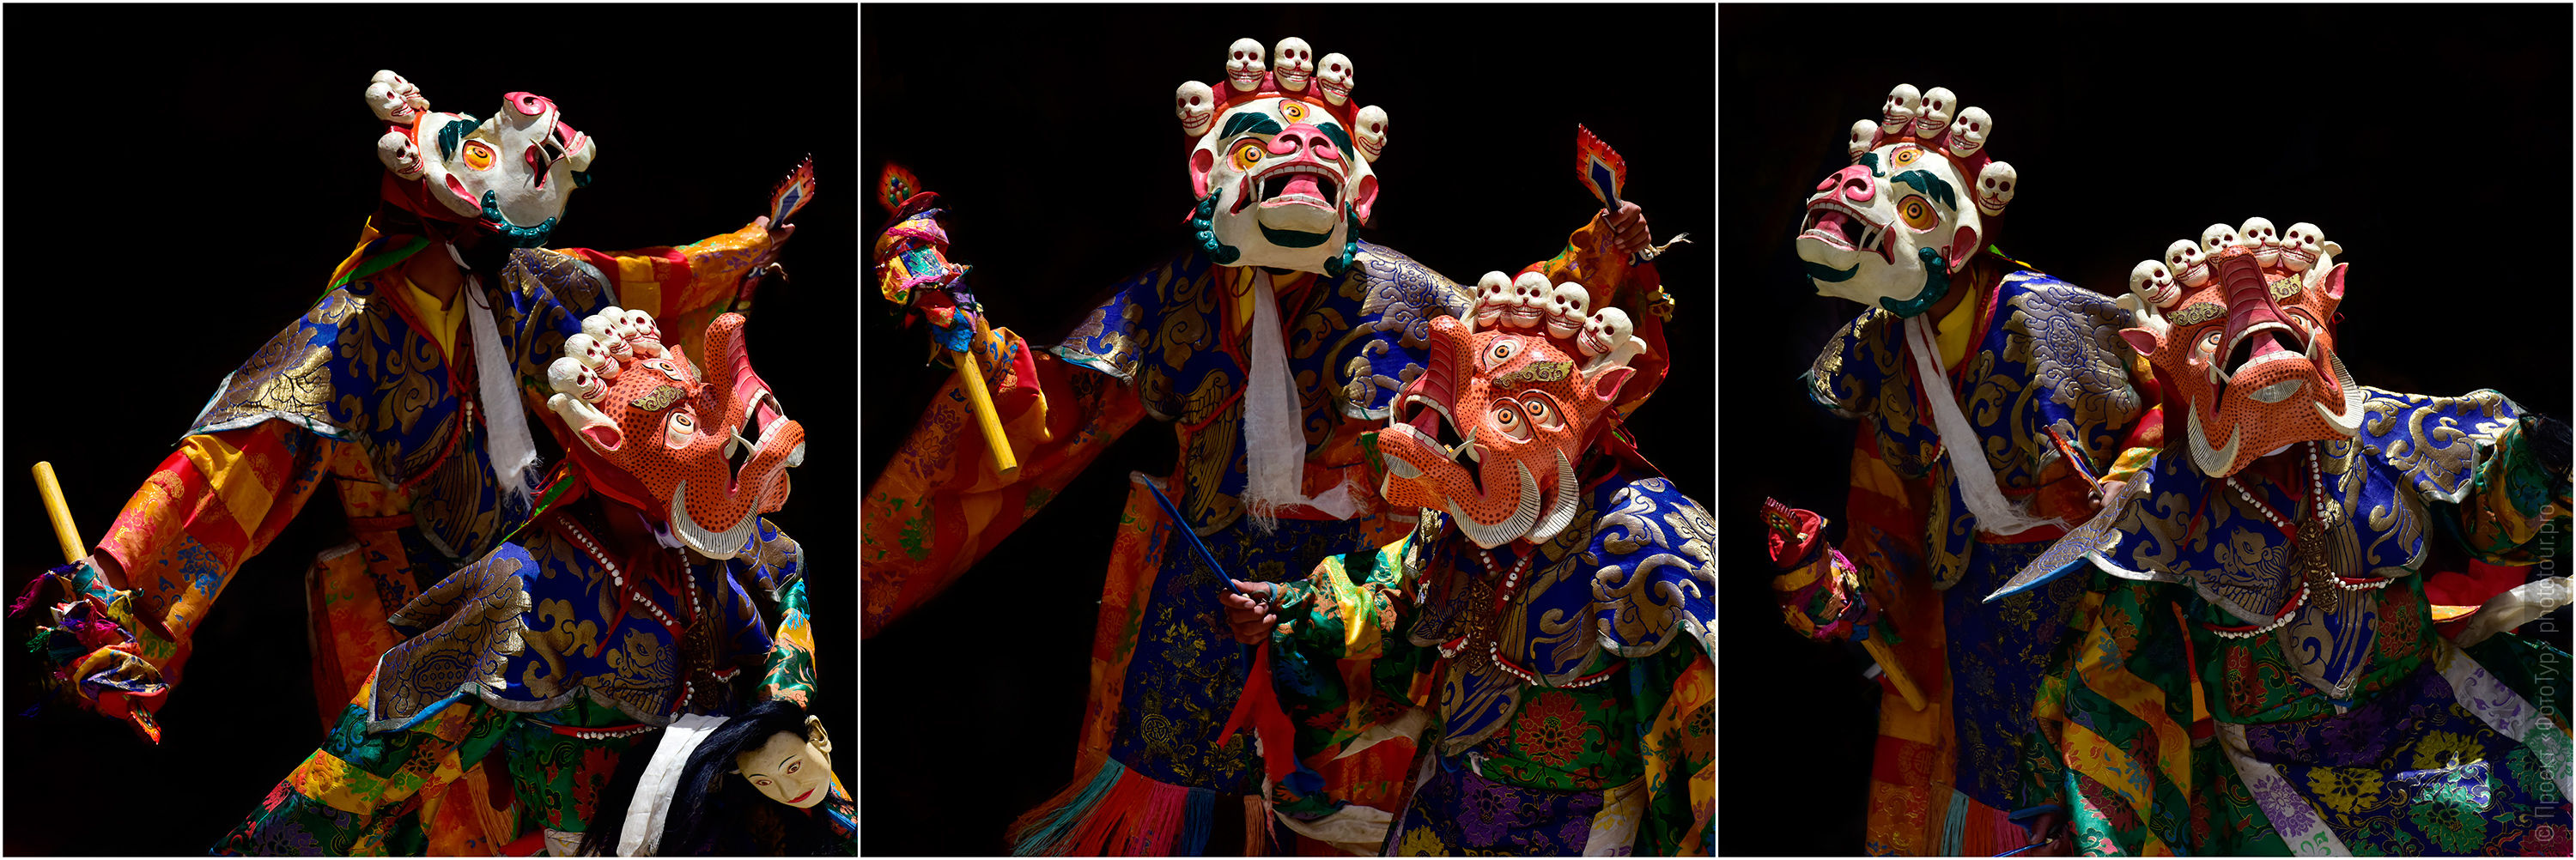 Фотосъемка Танца Цам в буддийском монастыре Карша, королевство Занскар, Индия.